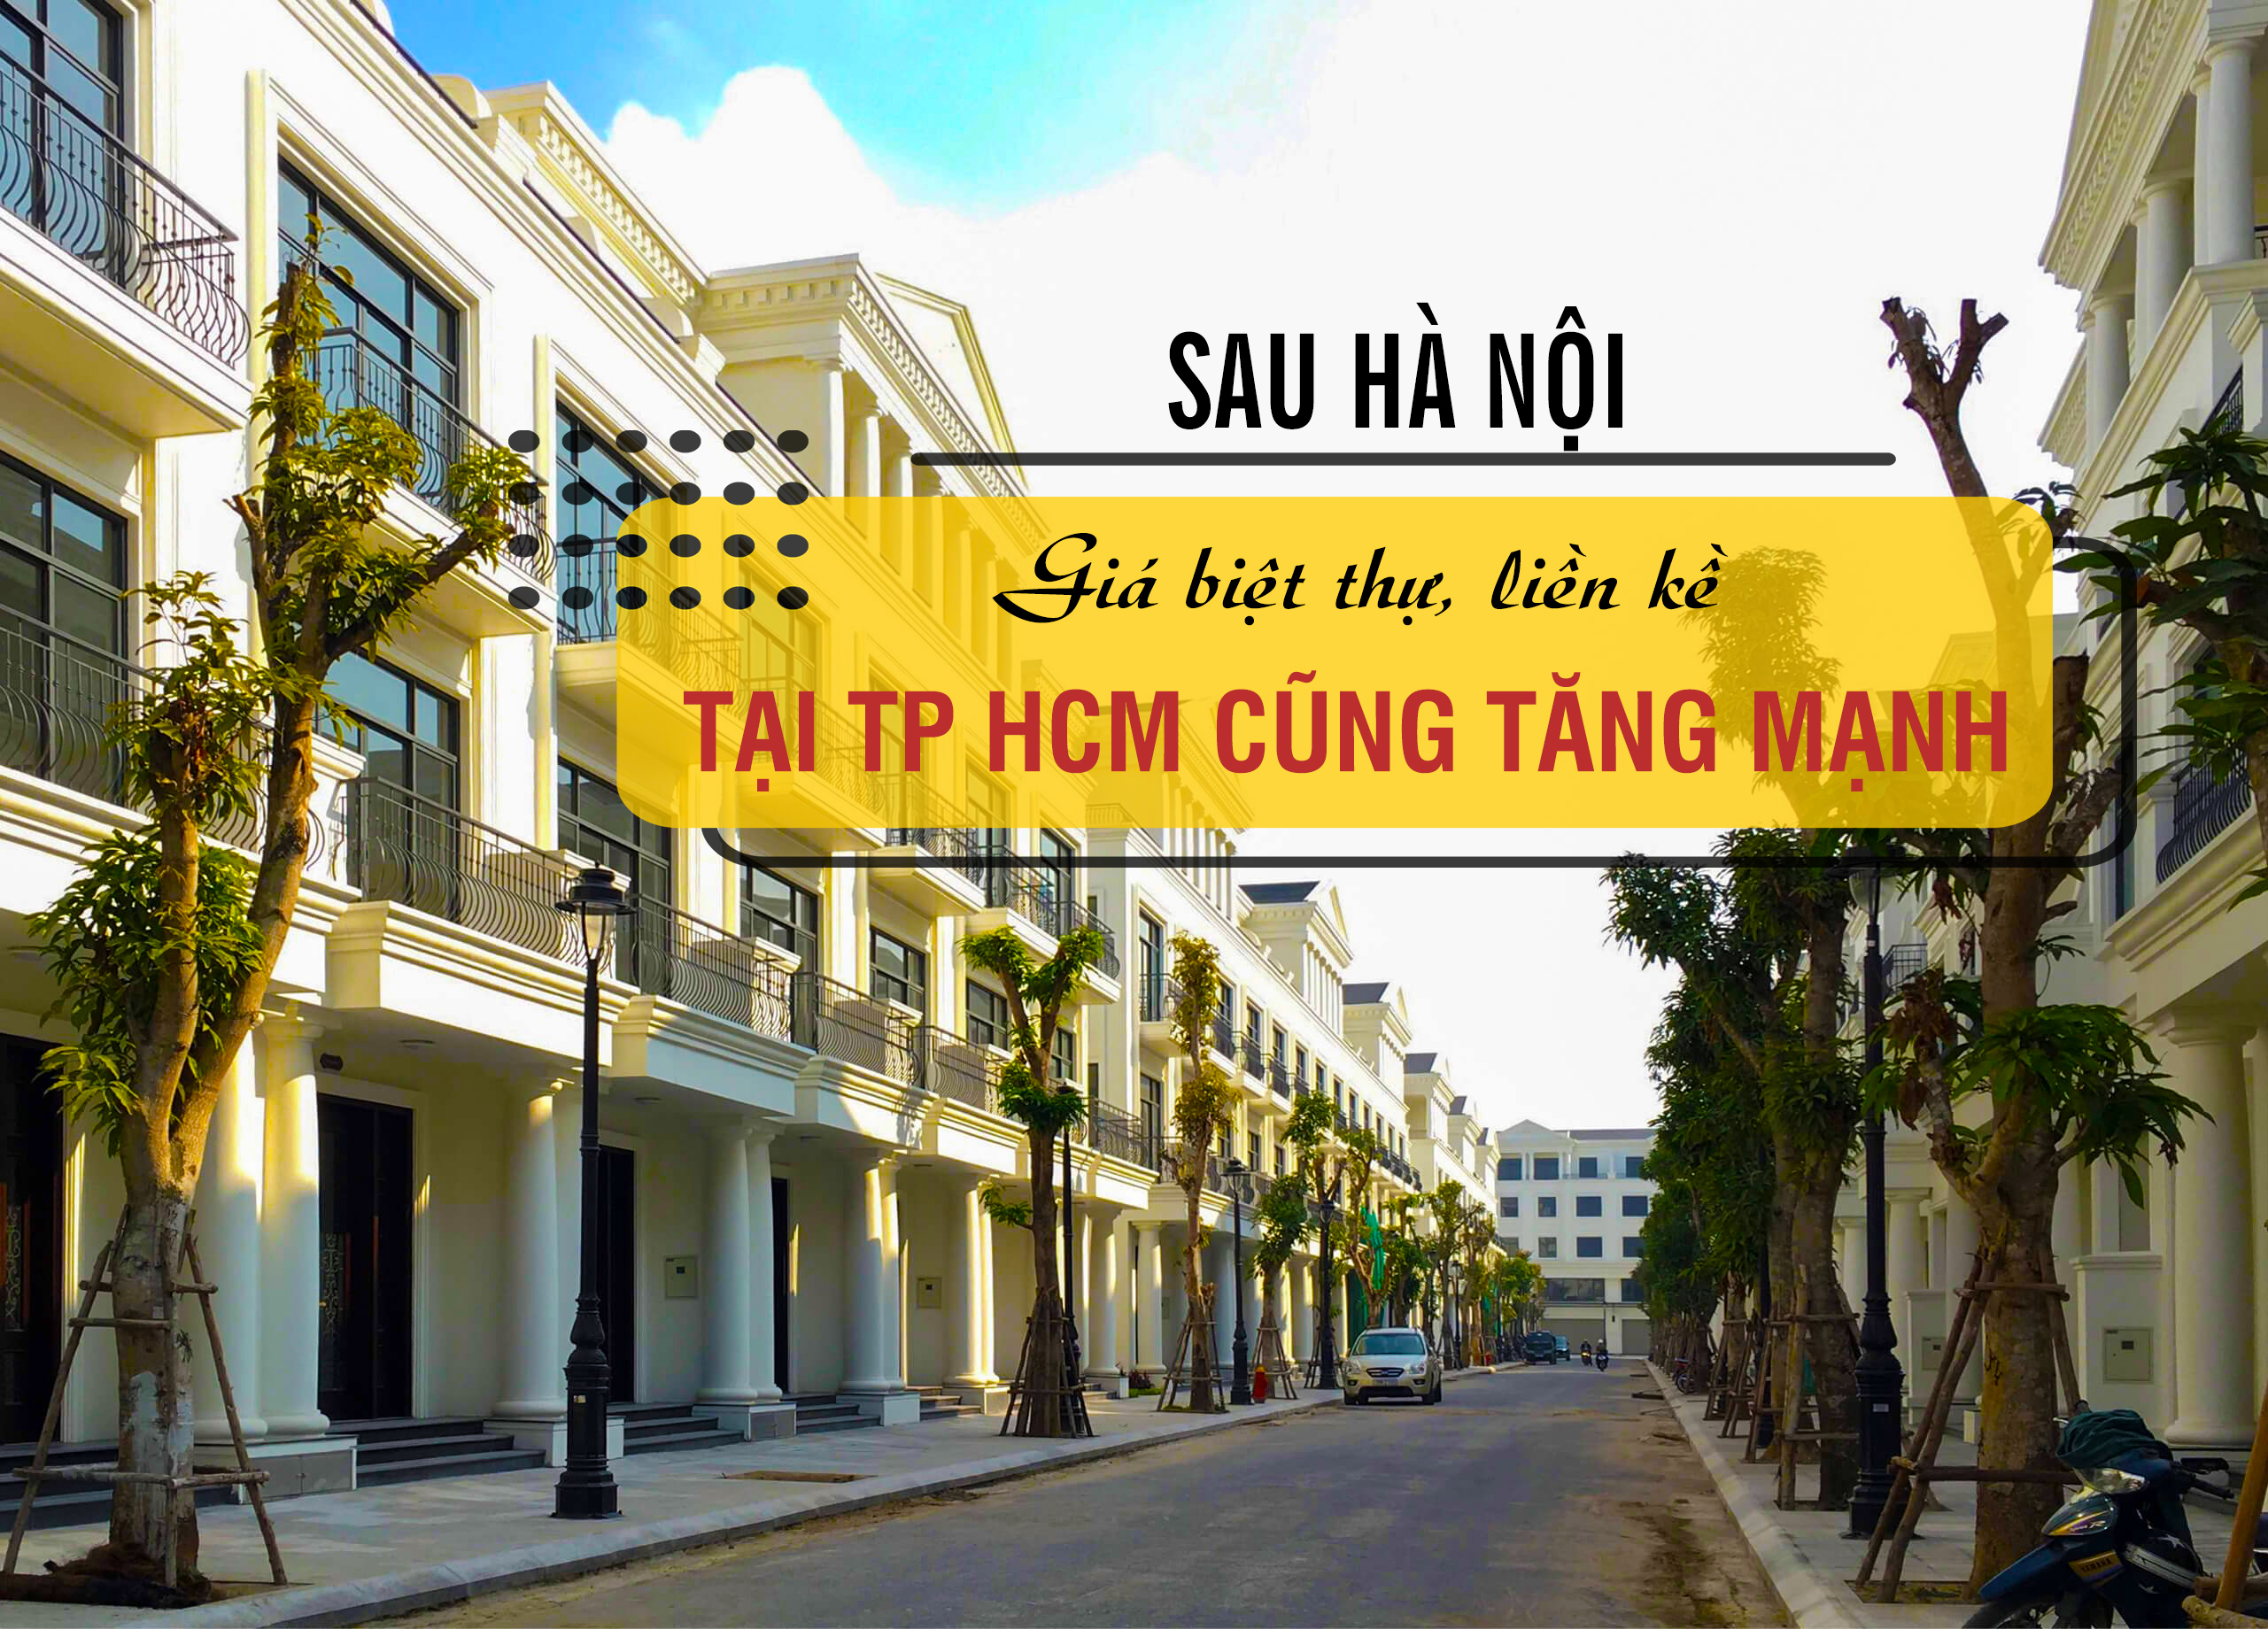 Sau Hà Nội, giá biệt thự, liền kề tại TP Hồ Chí Minh cũng tăng mạnh?